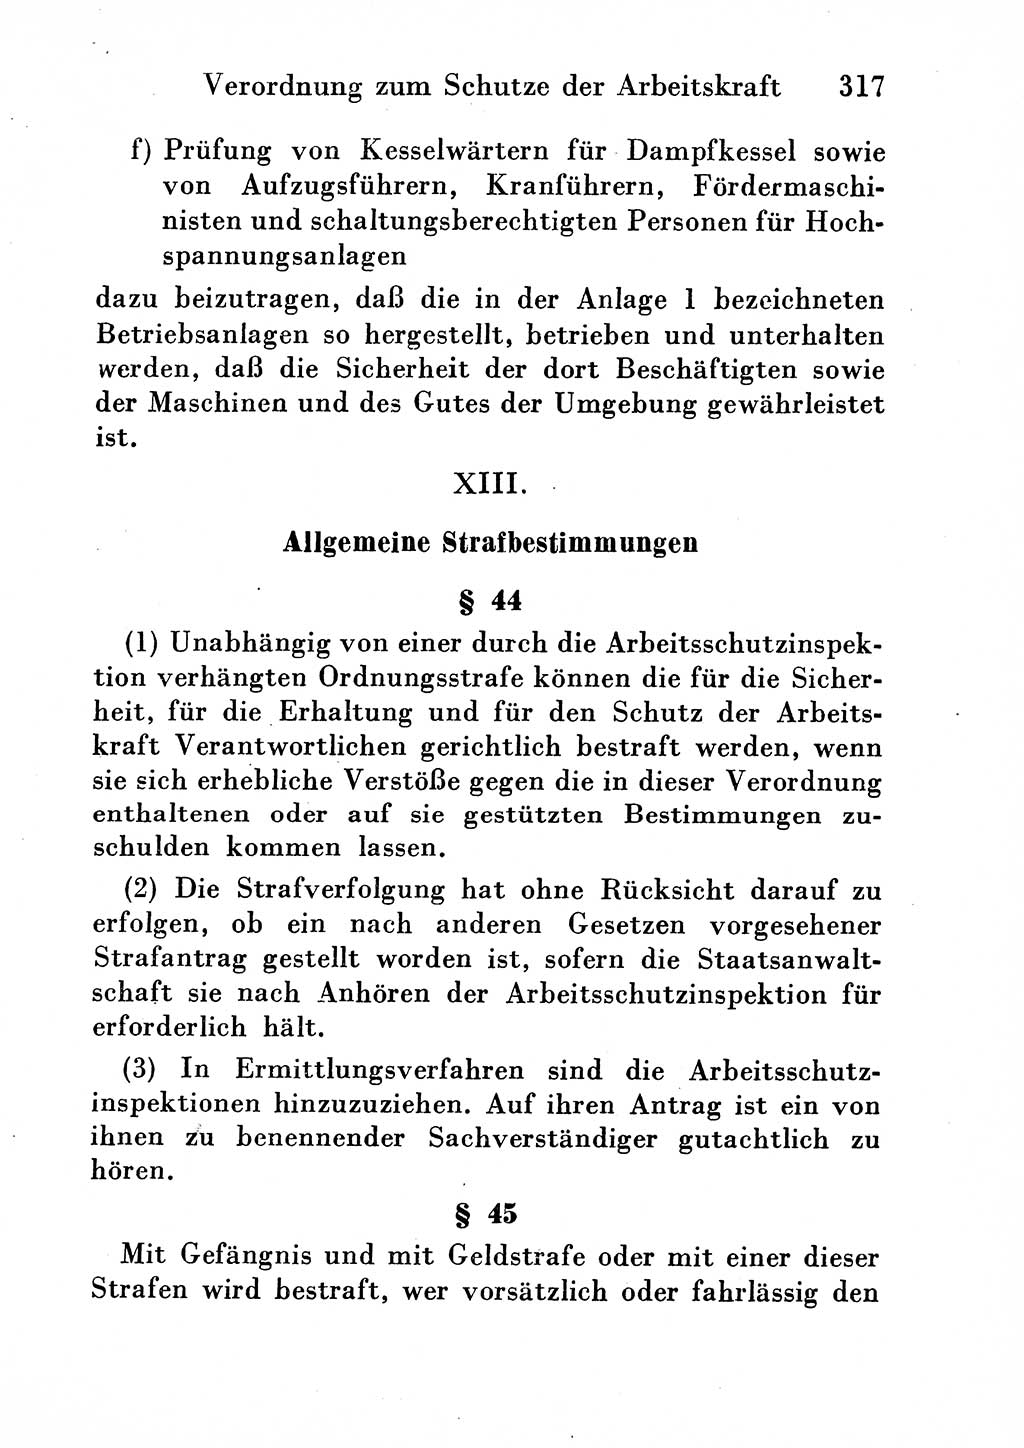 Strafgesetzbuch (StGB) und andere Strafgesetze [Deutsche Demokratische Republik (DDR)] 1954, Seite 317 (StGB Strafges. DDR 1954, S. 317)